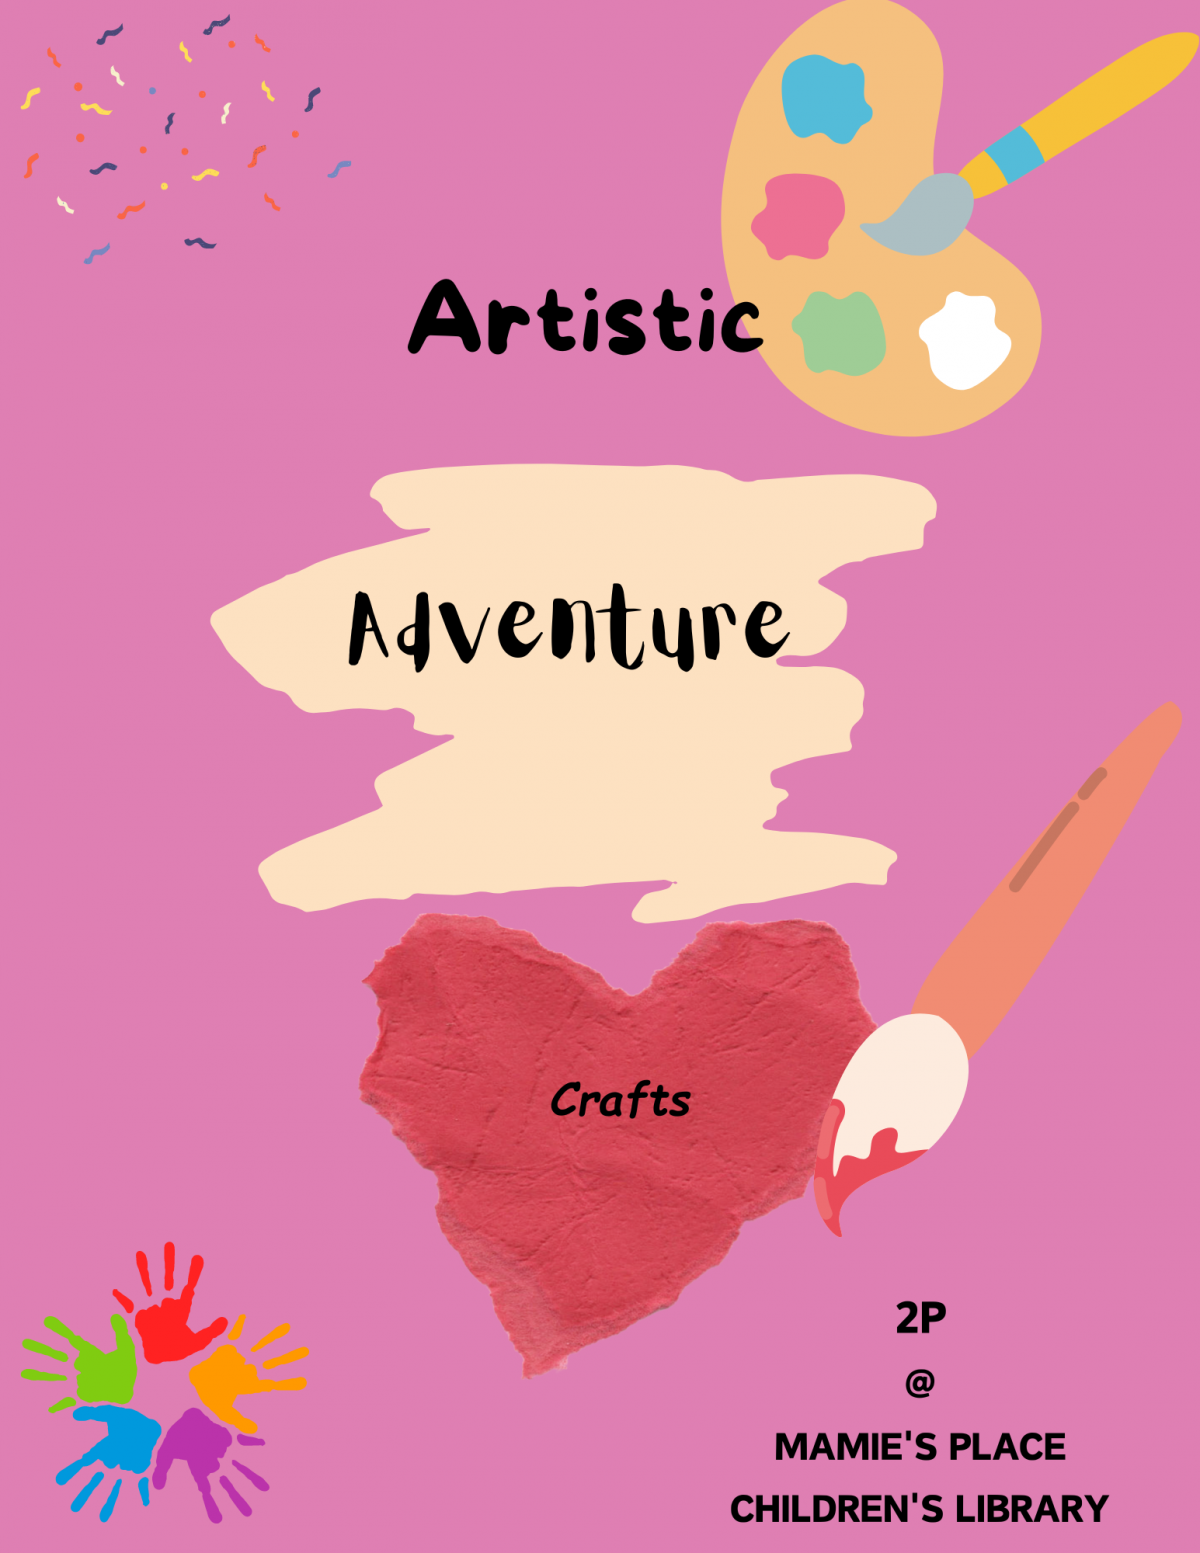 Artistic Adventure (crafts)